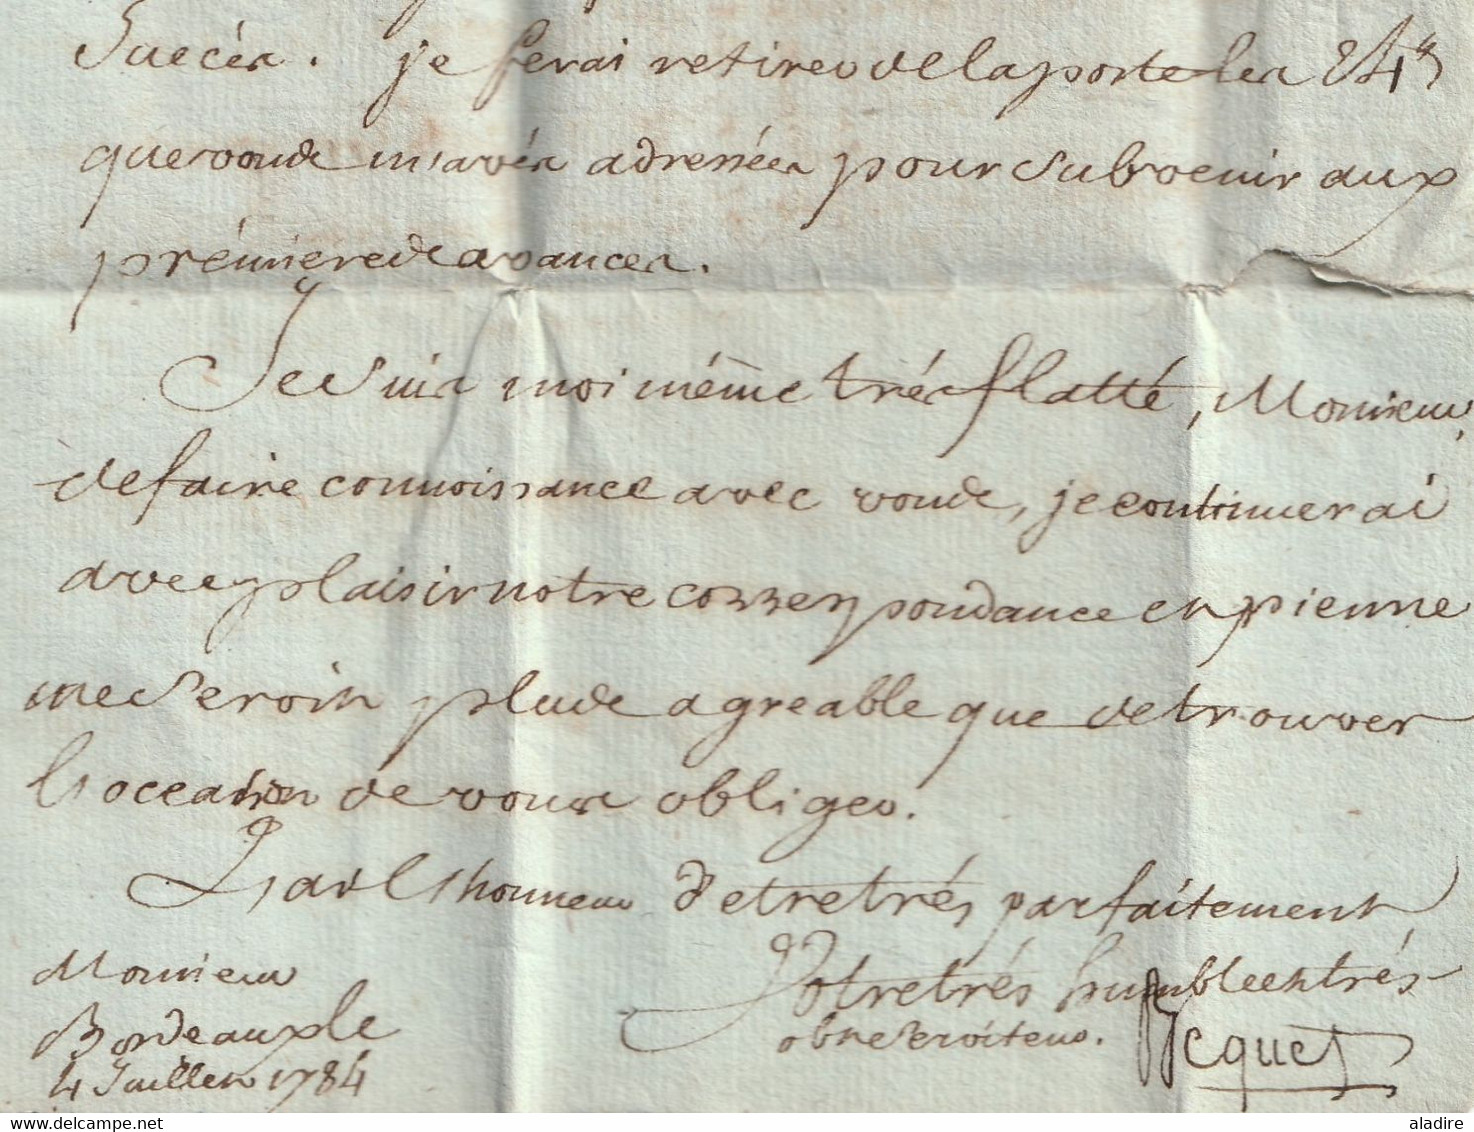 1784  - Marque postale B couronné sur Lettre pliée avec corresp de 3 pages de BORDEAUX vers ARGENTAN par TULLE - t6